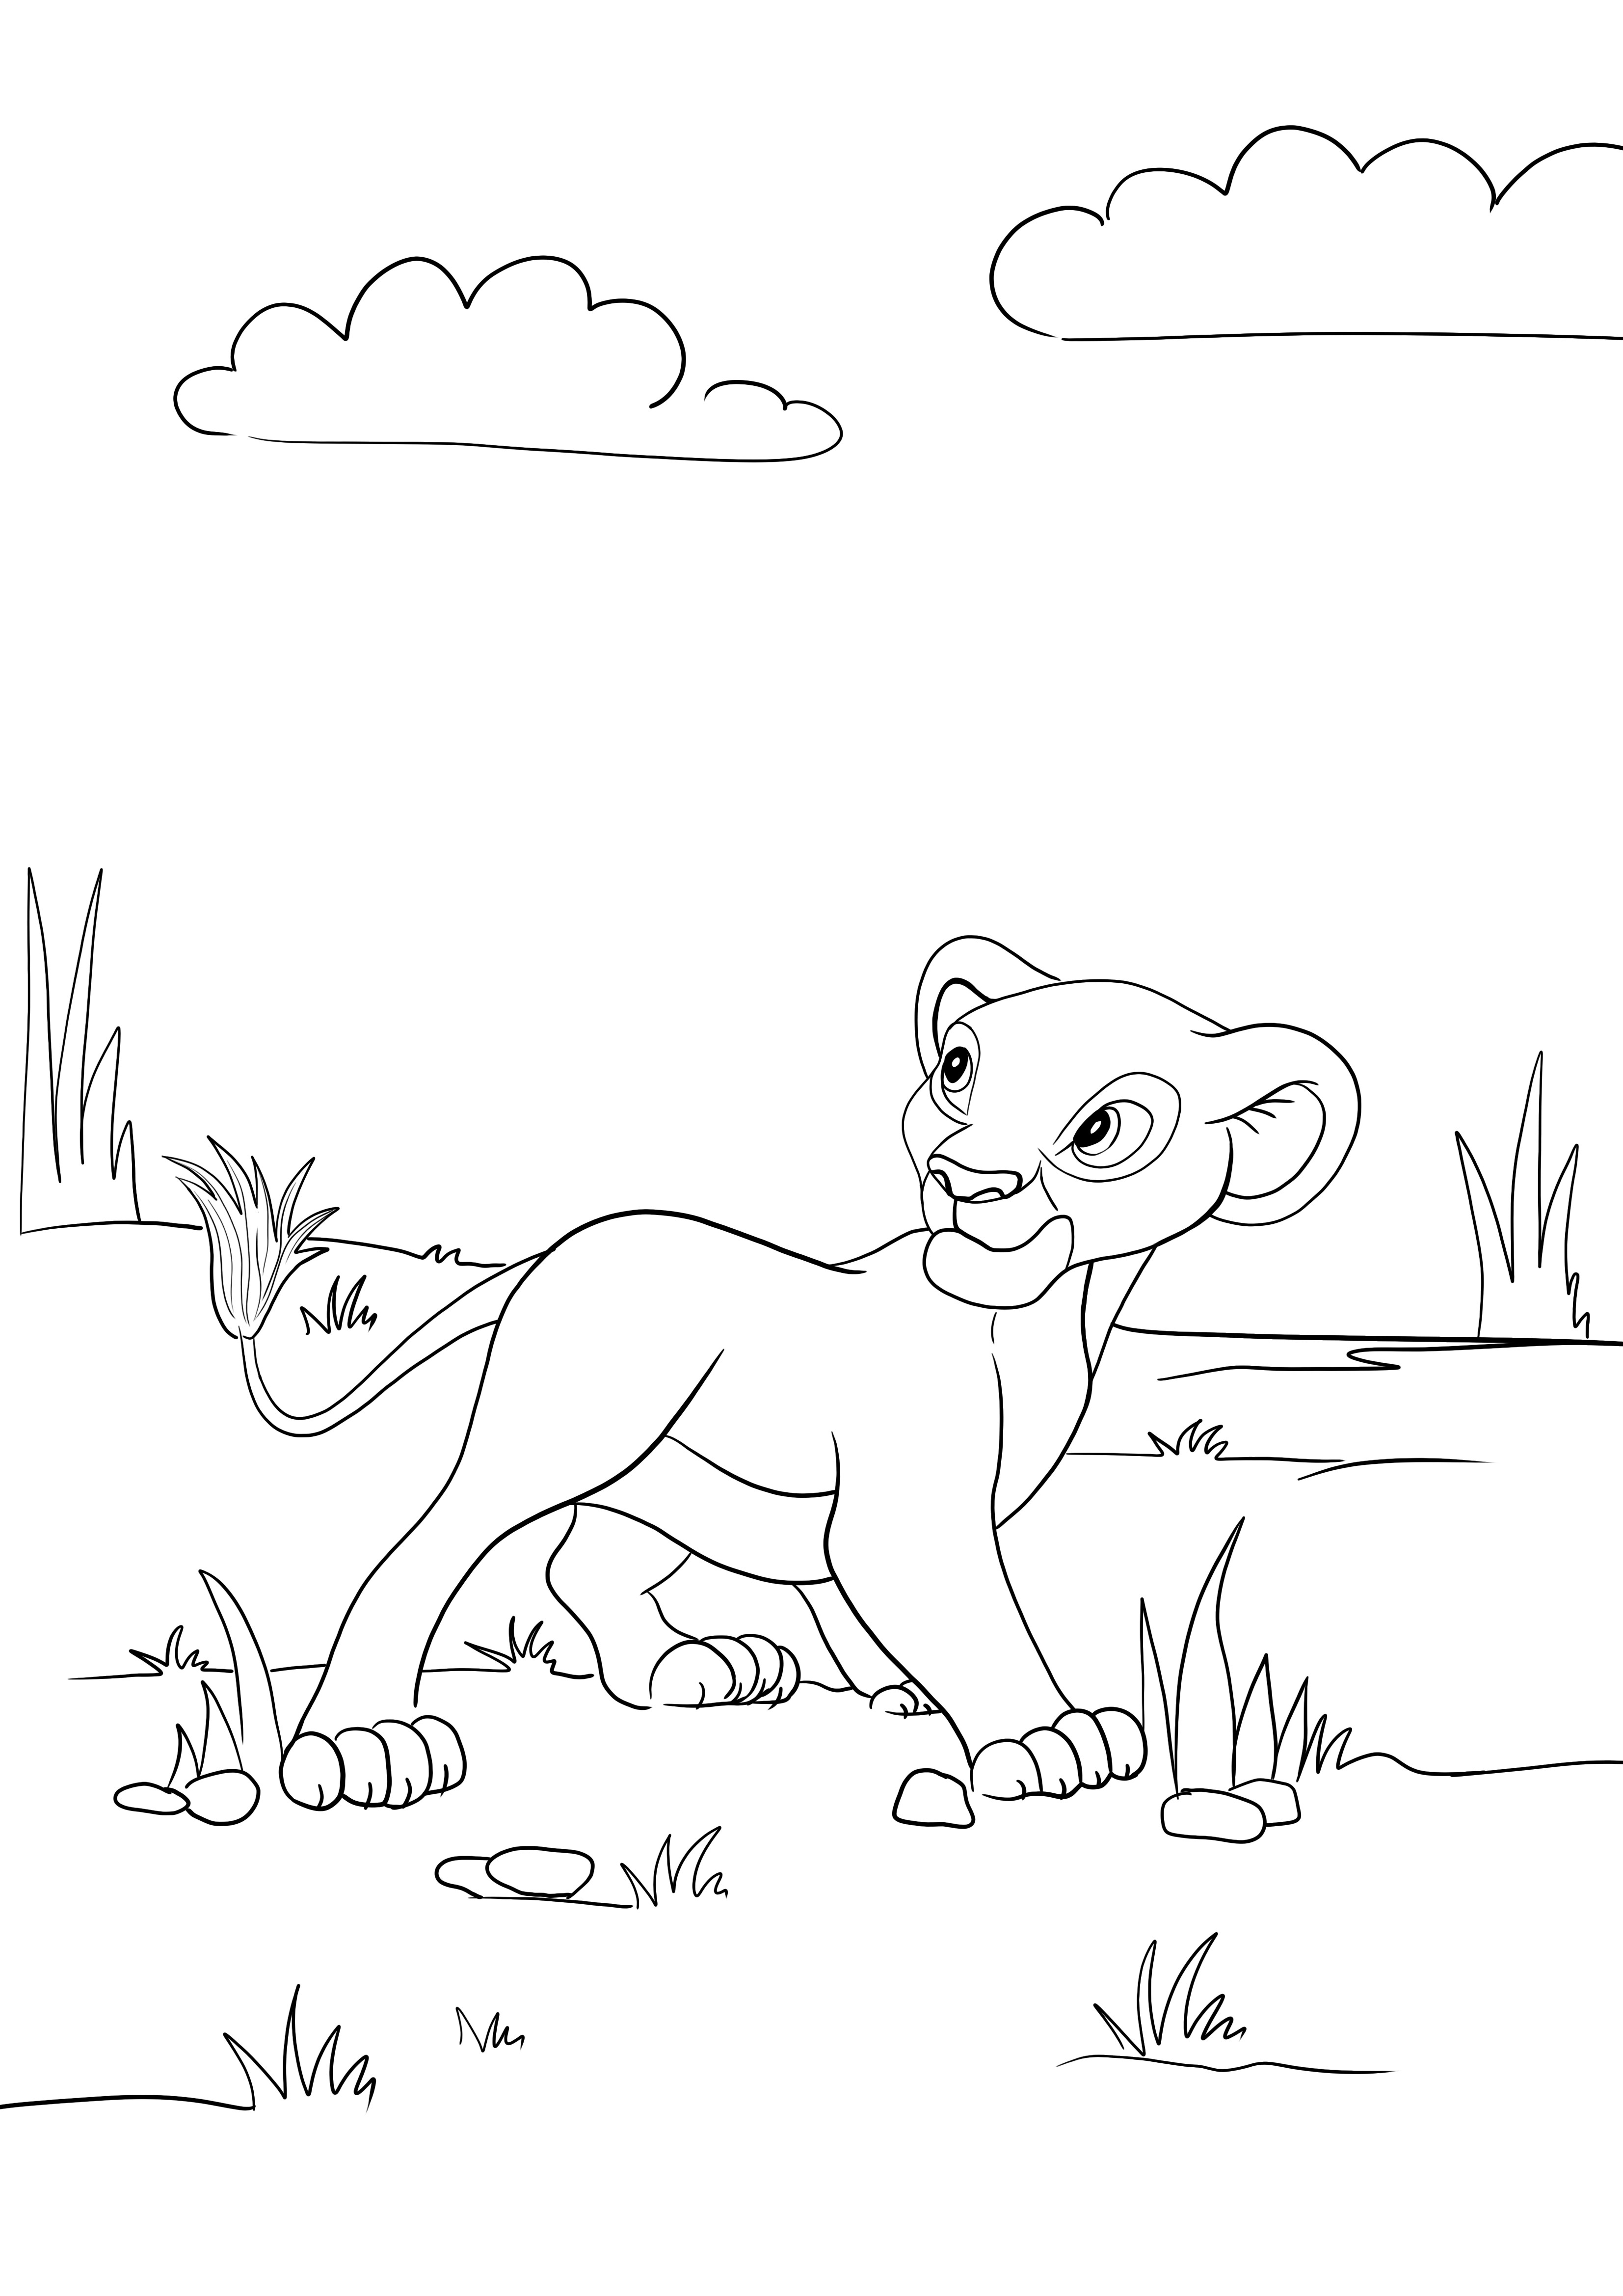 Dibujo de Simba caminando para colorear e imprimir para niños